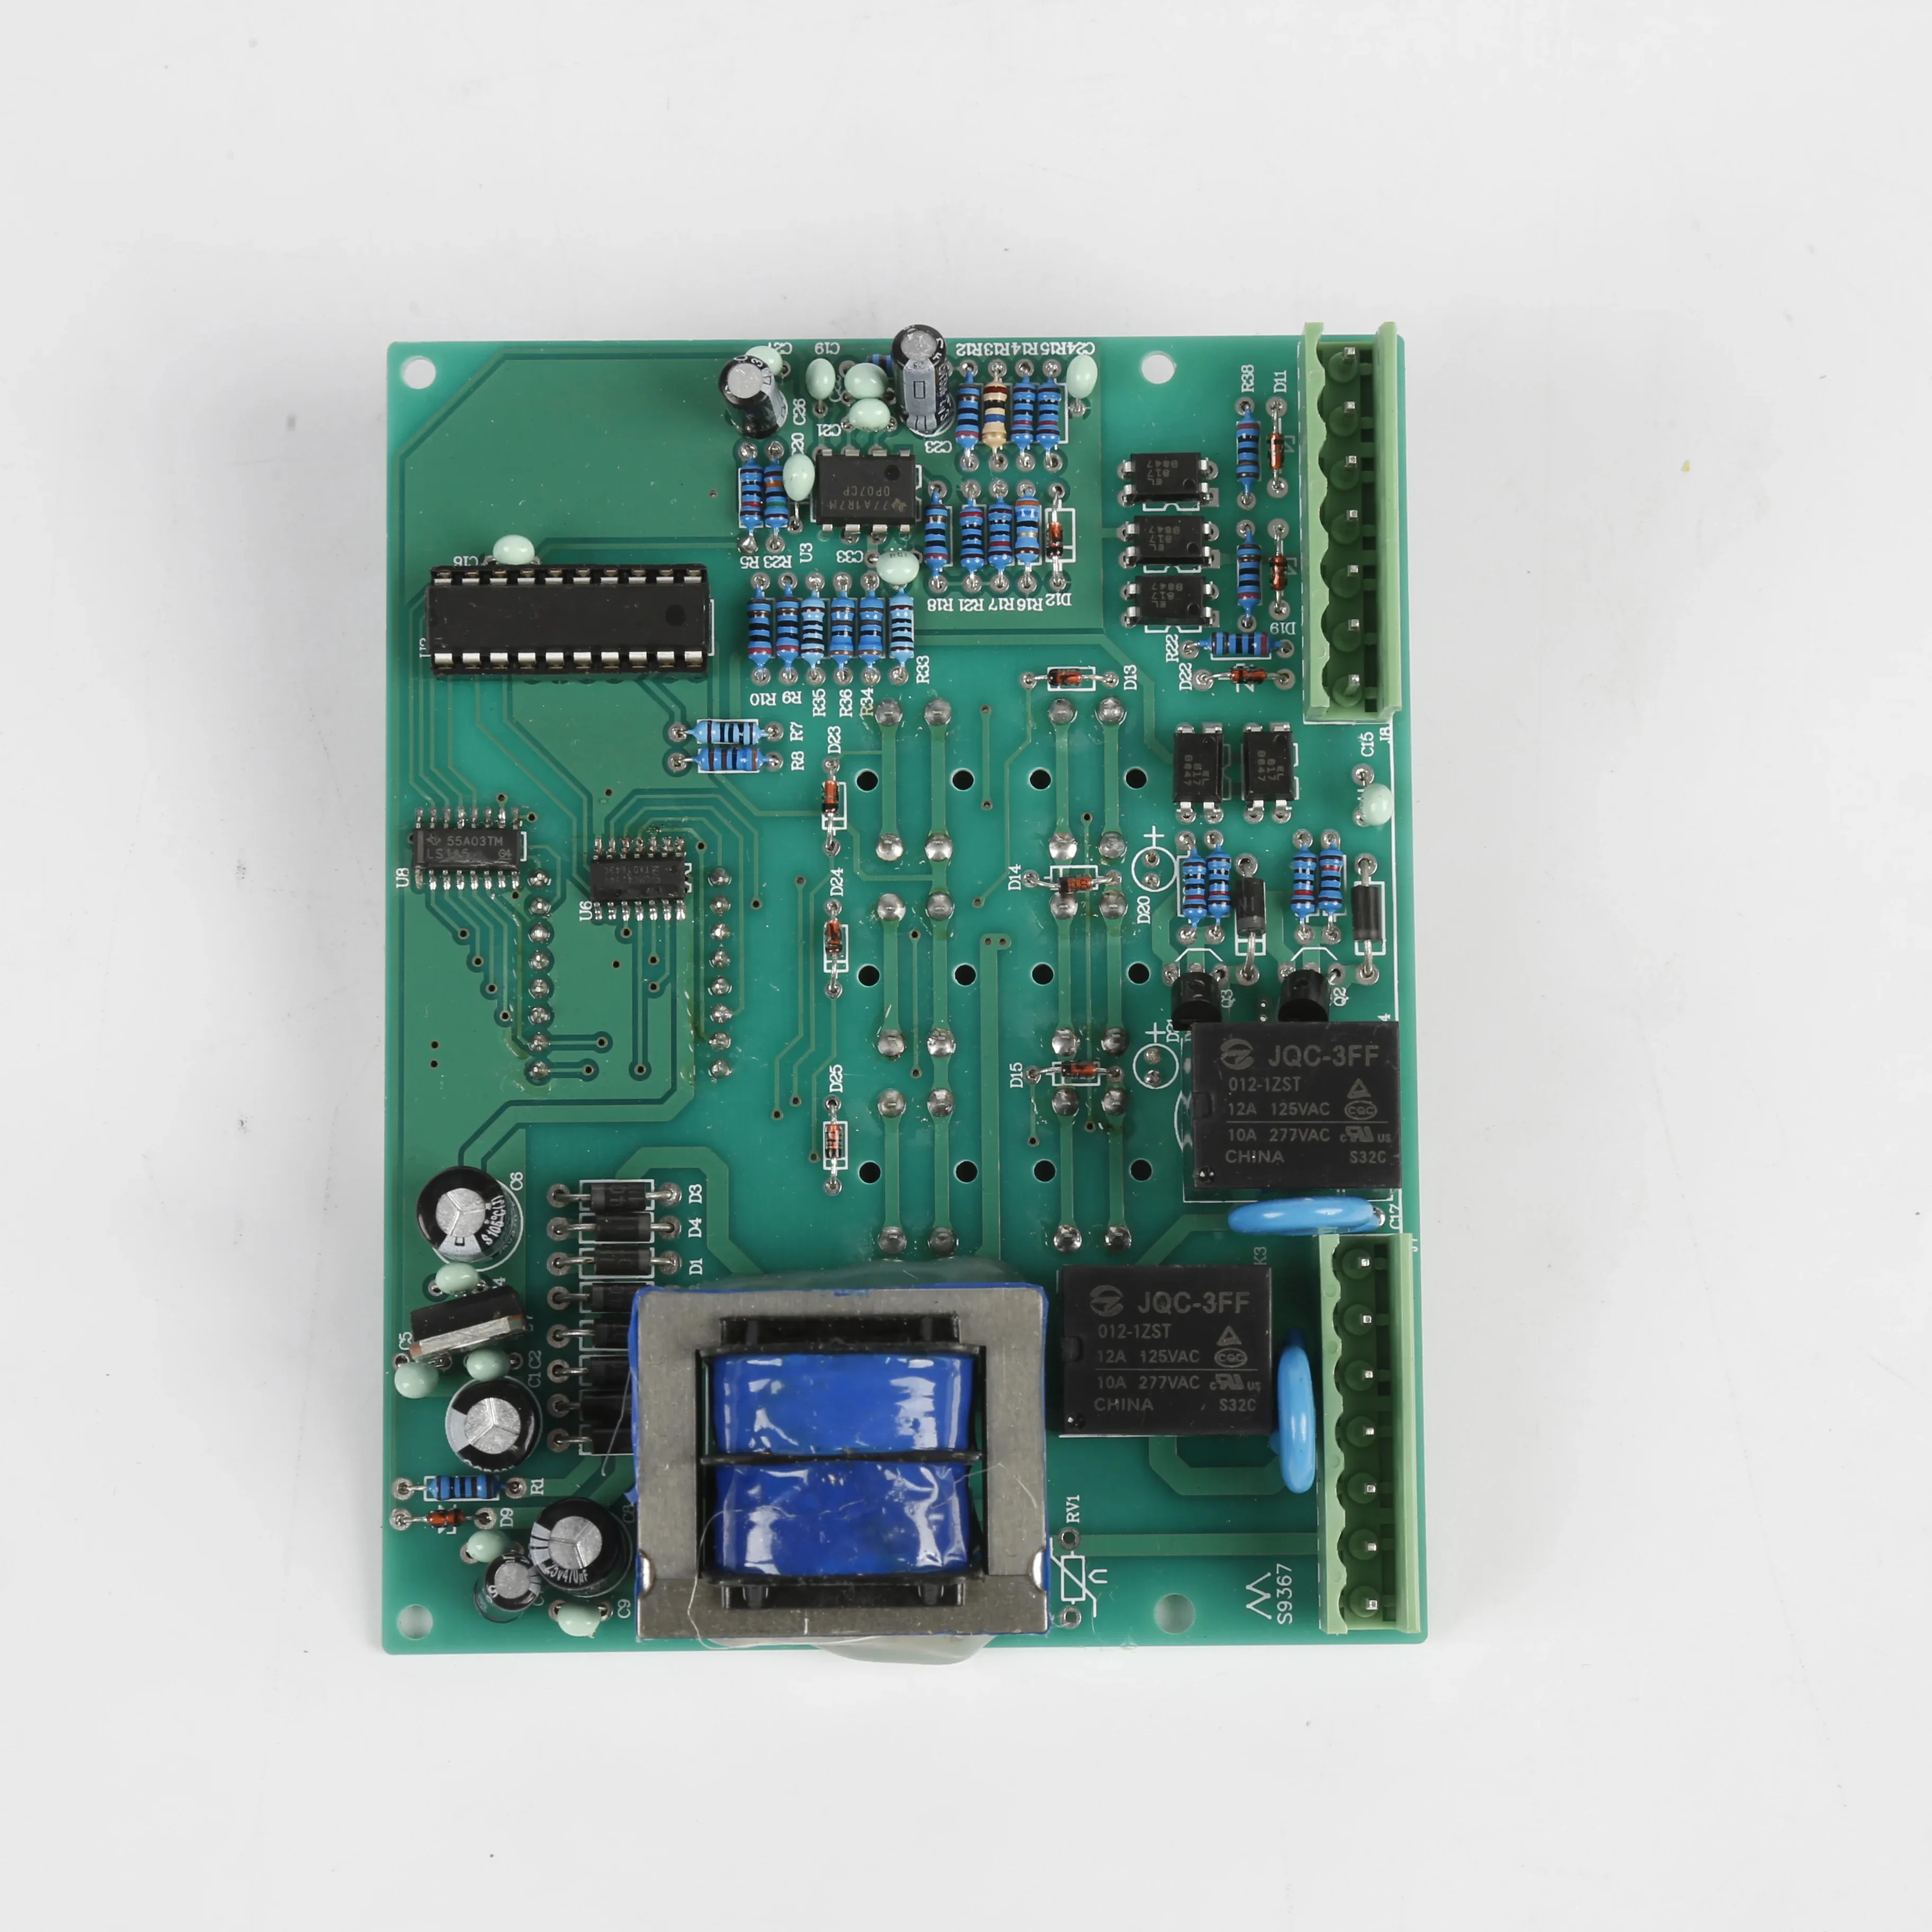 ชิปนําเข้าบอร์ดควบคุม PCBA บริการที่กําหนดเองราคาโรงงาน OEM ODM SMT ผลิตภัณฑ์อิเล็กทรอนิกส์